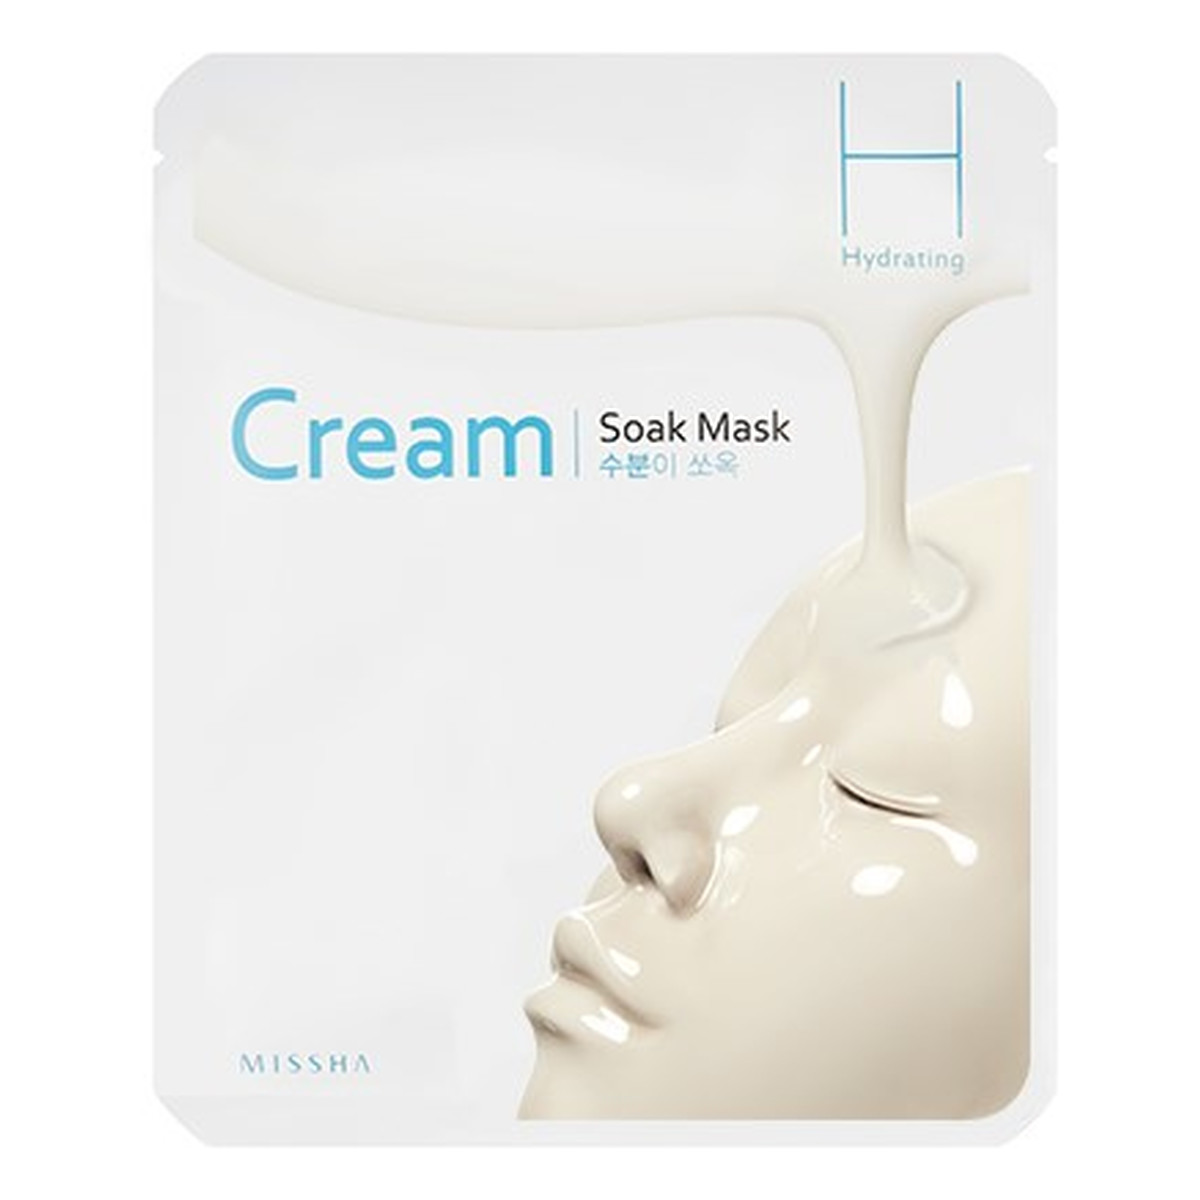 Missha Cream-Soak Mask Hydrating Nawadniająca Maseczka W Płachcie 23g